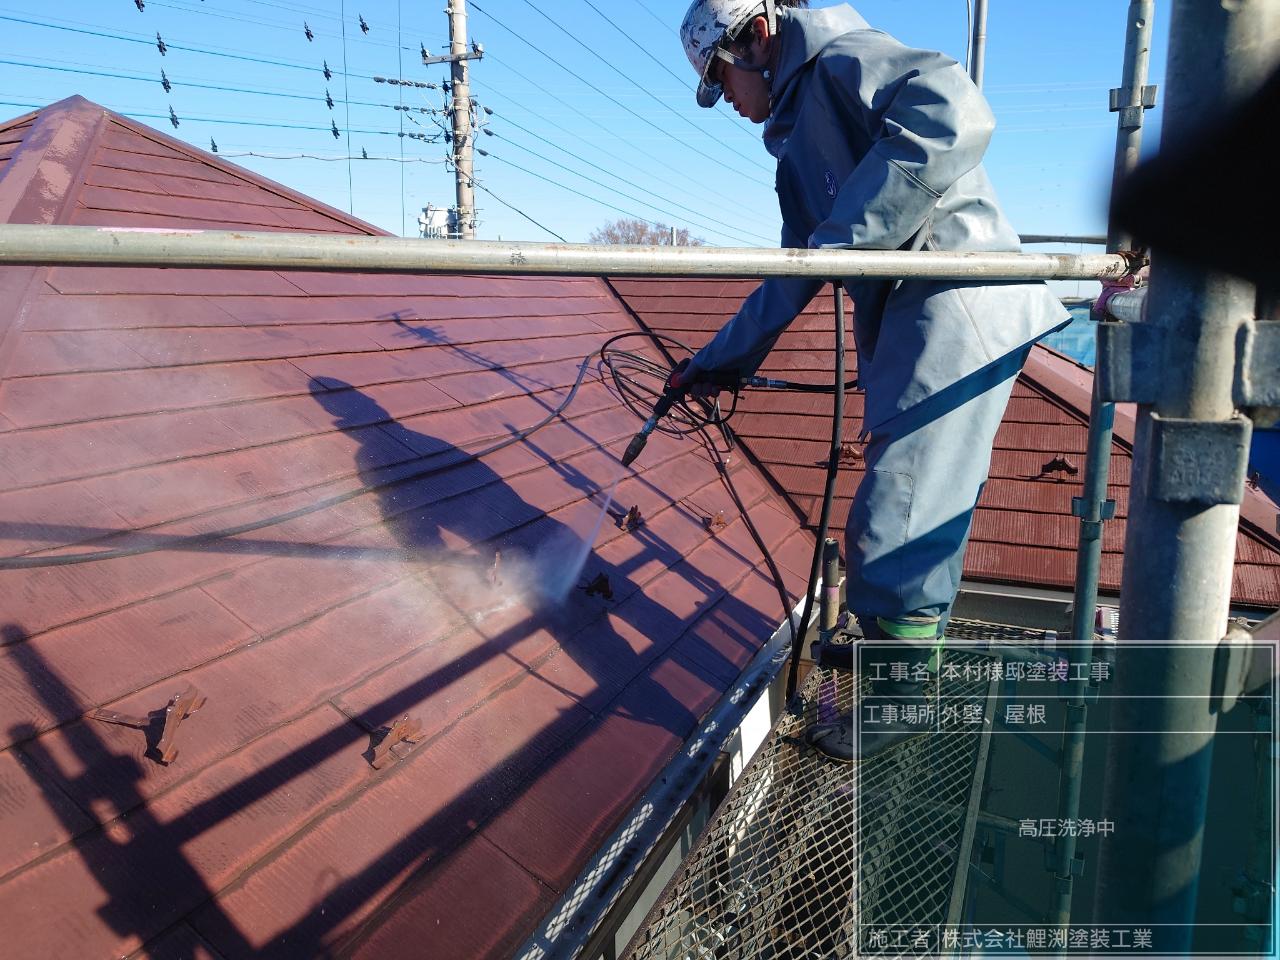 埼玉県坂戸市で外壁と屋根の高圧洗浄をしました。